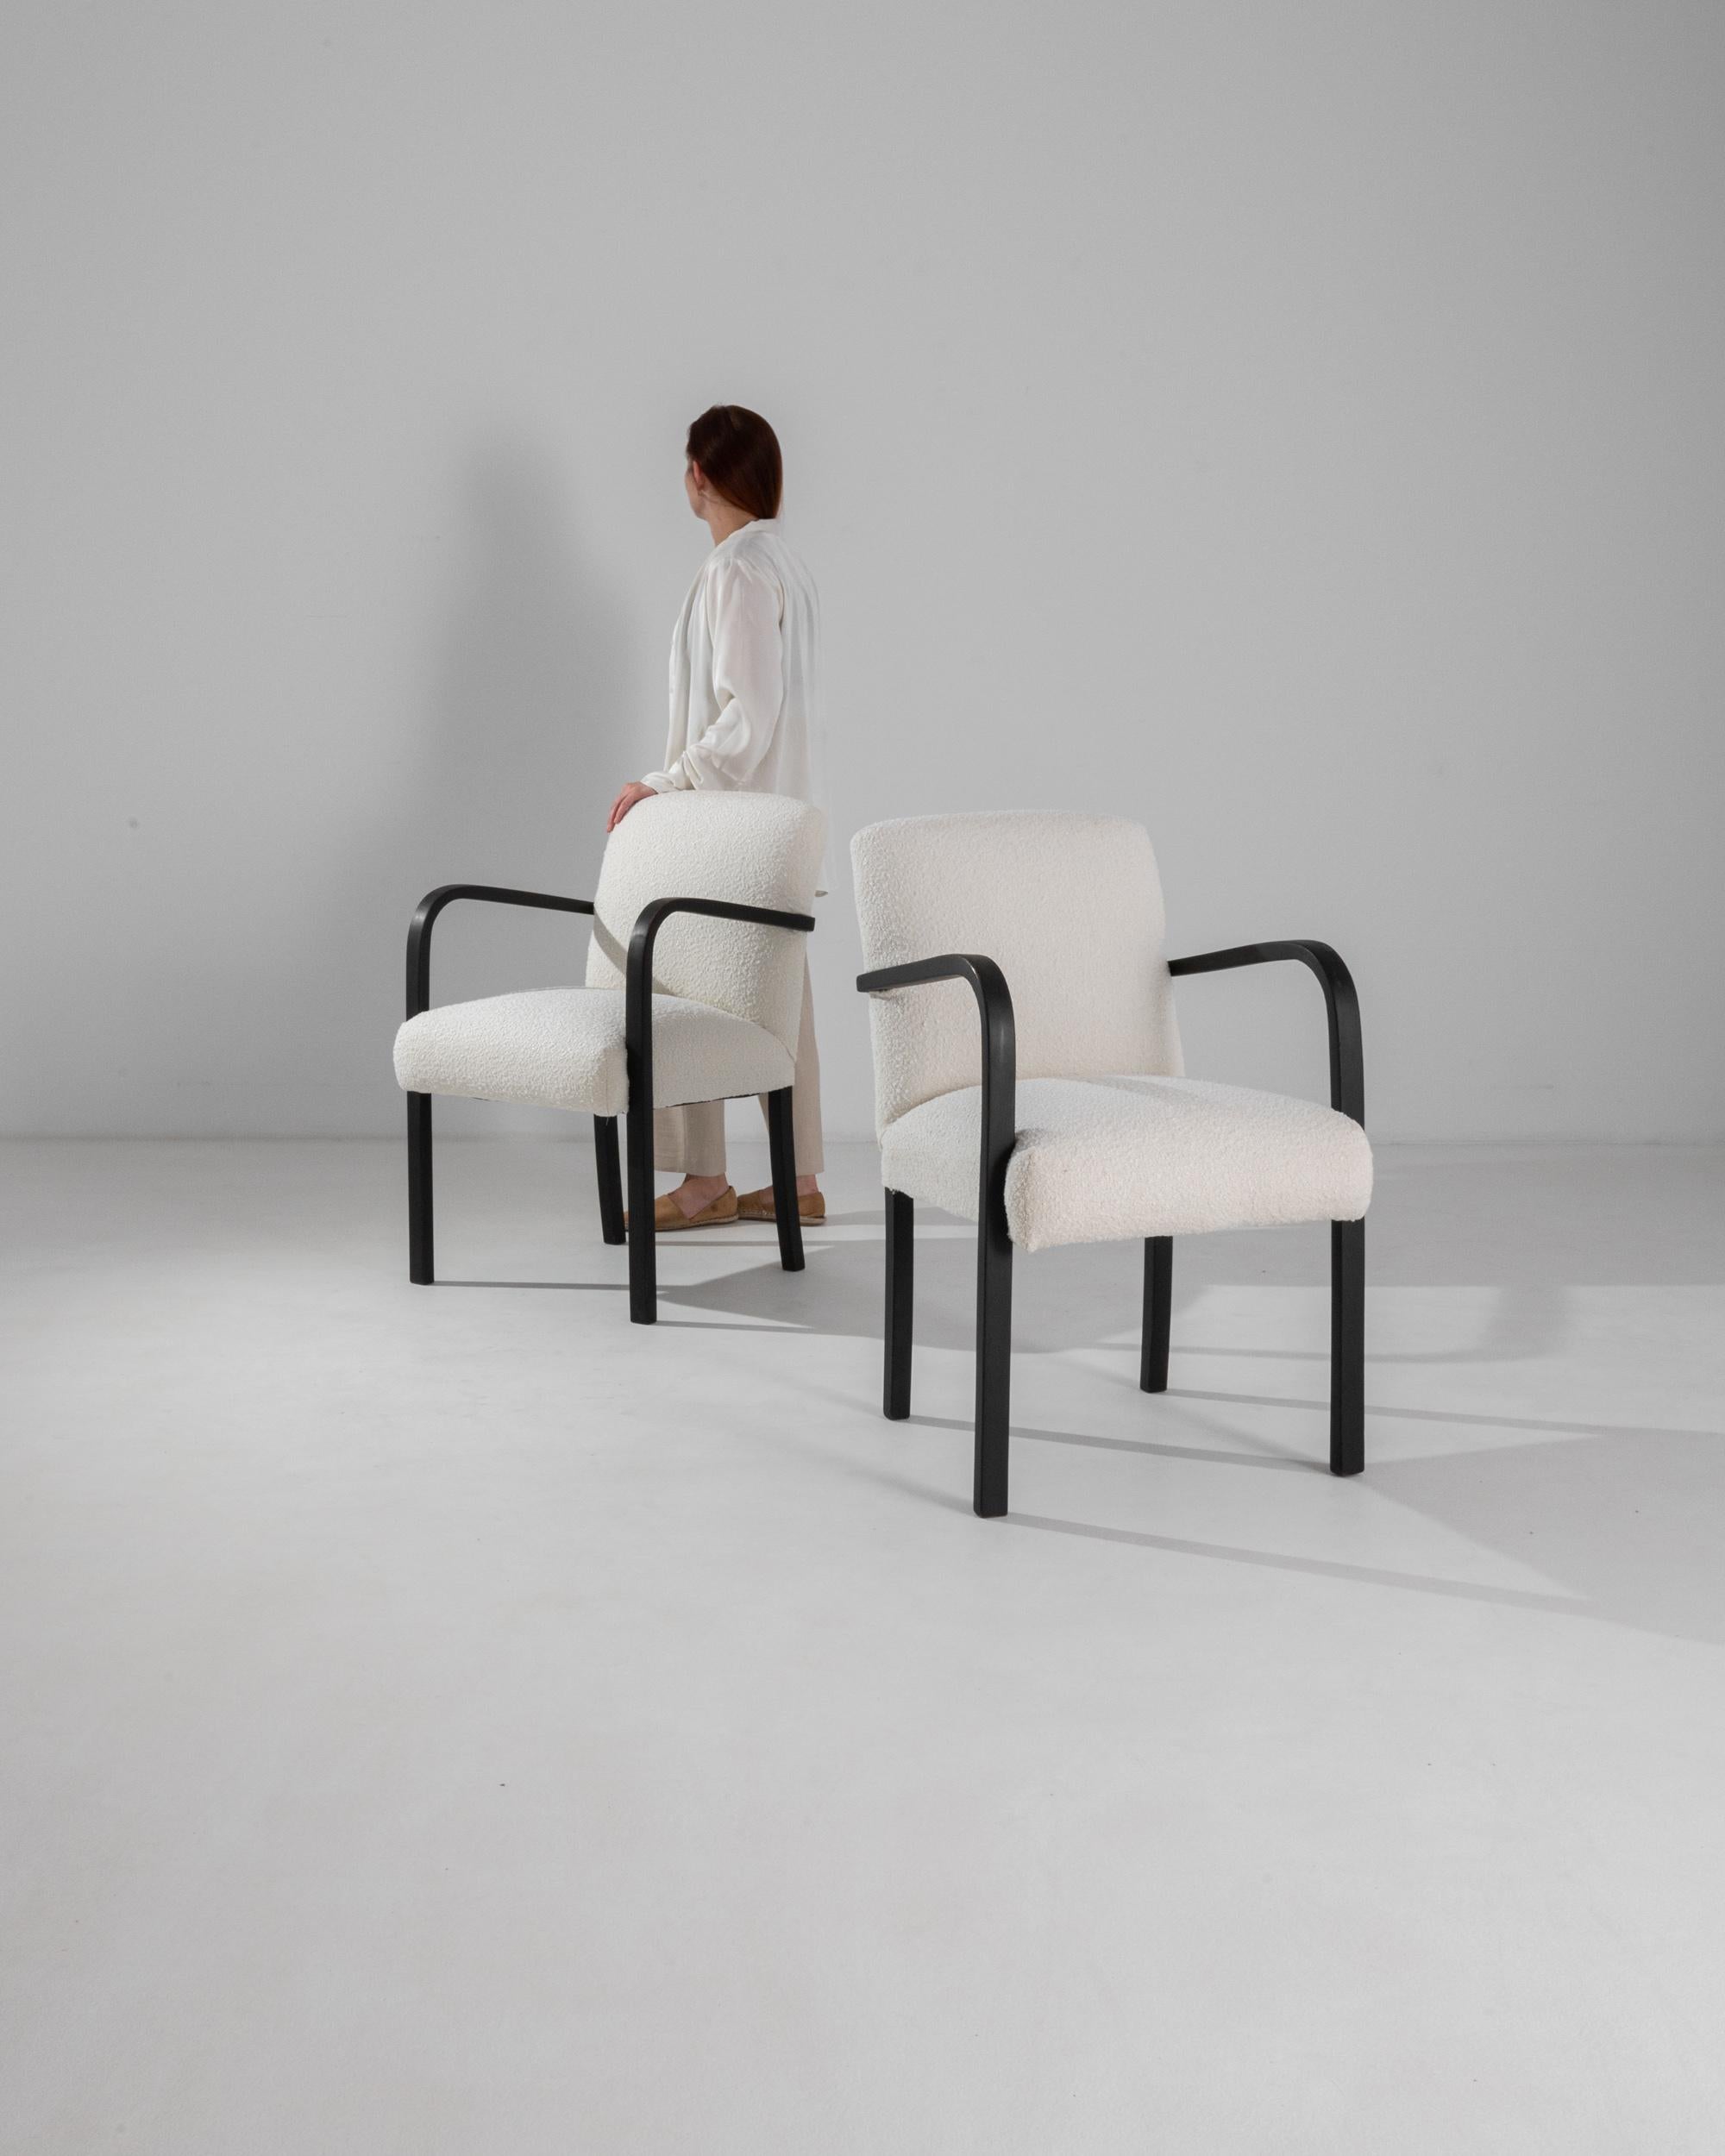 Rappels élégants de l'époque unique du modernisme d'Europe centrale, ces fauteuils, fabriqués dans les années 1960, conservent une fraîcheur contemporaine. Remis à neuf dans notre atelier avec un rembourrage en boucle blanc, la texture chinée